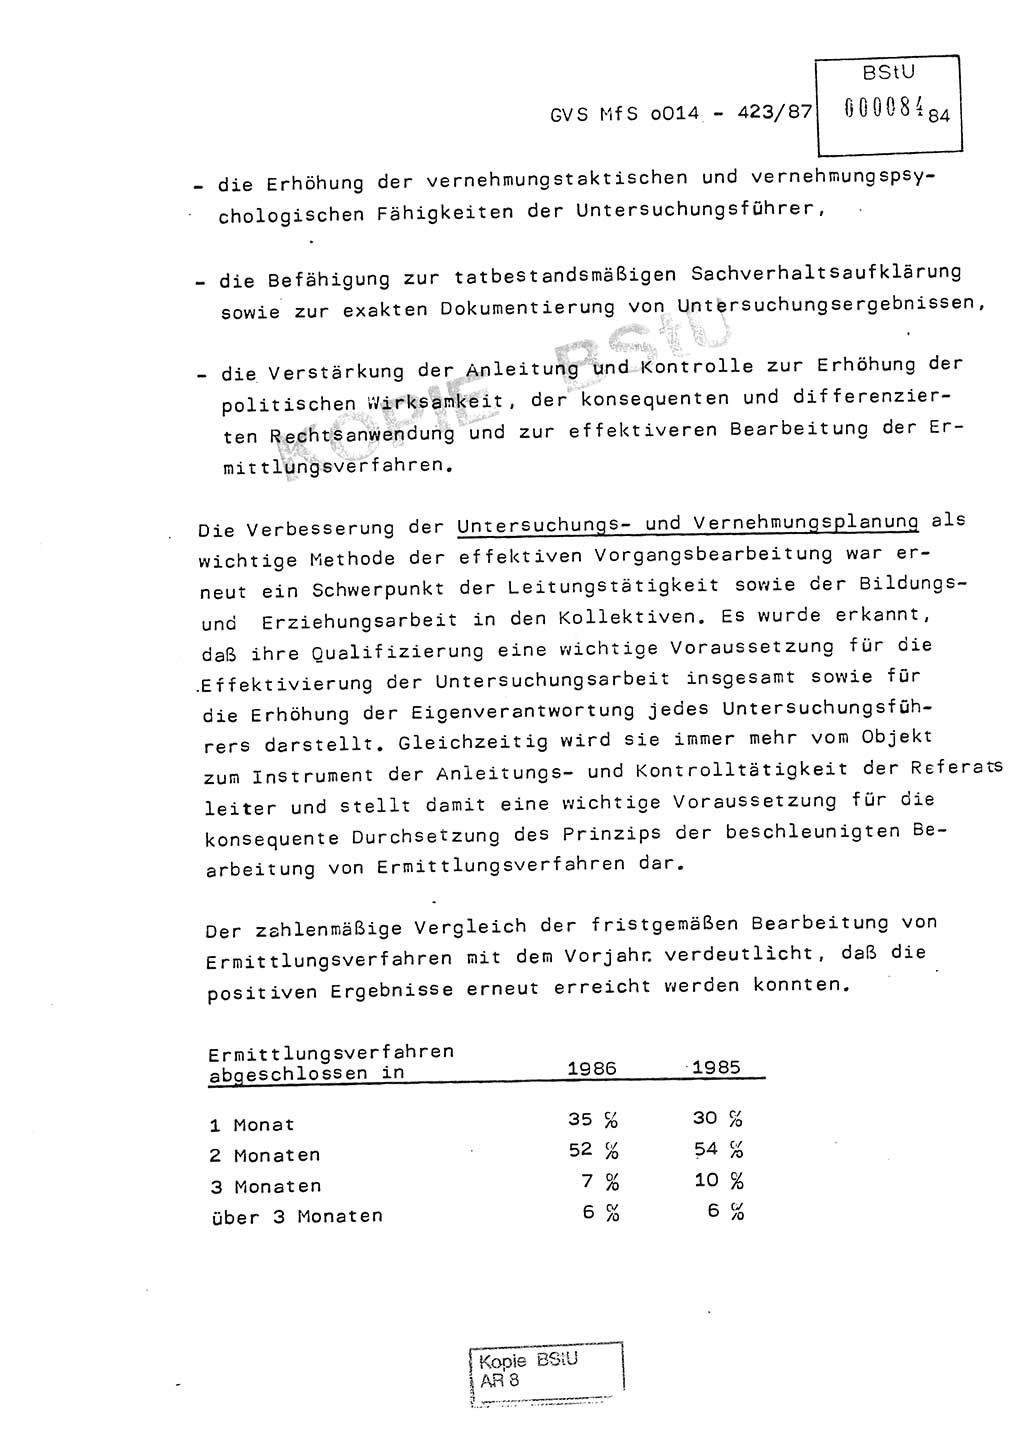 Jahresbericht der Hauptabteilung (HA) Ⅸ 1986, Einschätzung der Wirksamkeit der Untersuchungsarbeit im Jahre 1986, Ministerium für Staatssicherheit (MfS) der Deutschen Demokratischen Republik (DDR), Hauptabteilung Ⅸ, Geheime Verschlußsache (GVS) o014-423/87, Berlin 1987, Seite 84 (Einsch. MfS DDR HA Ⅸ GVS o014-423/87 1986, S. 84)